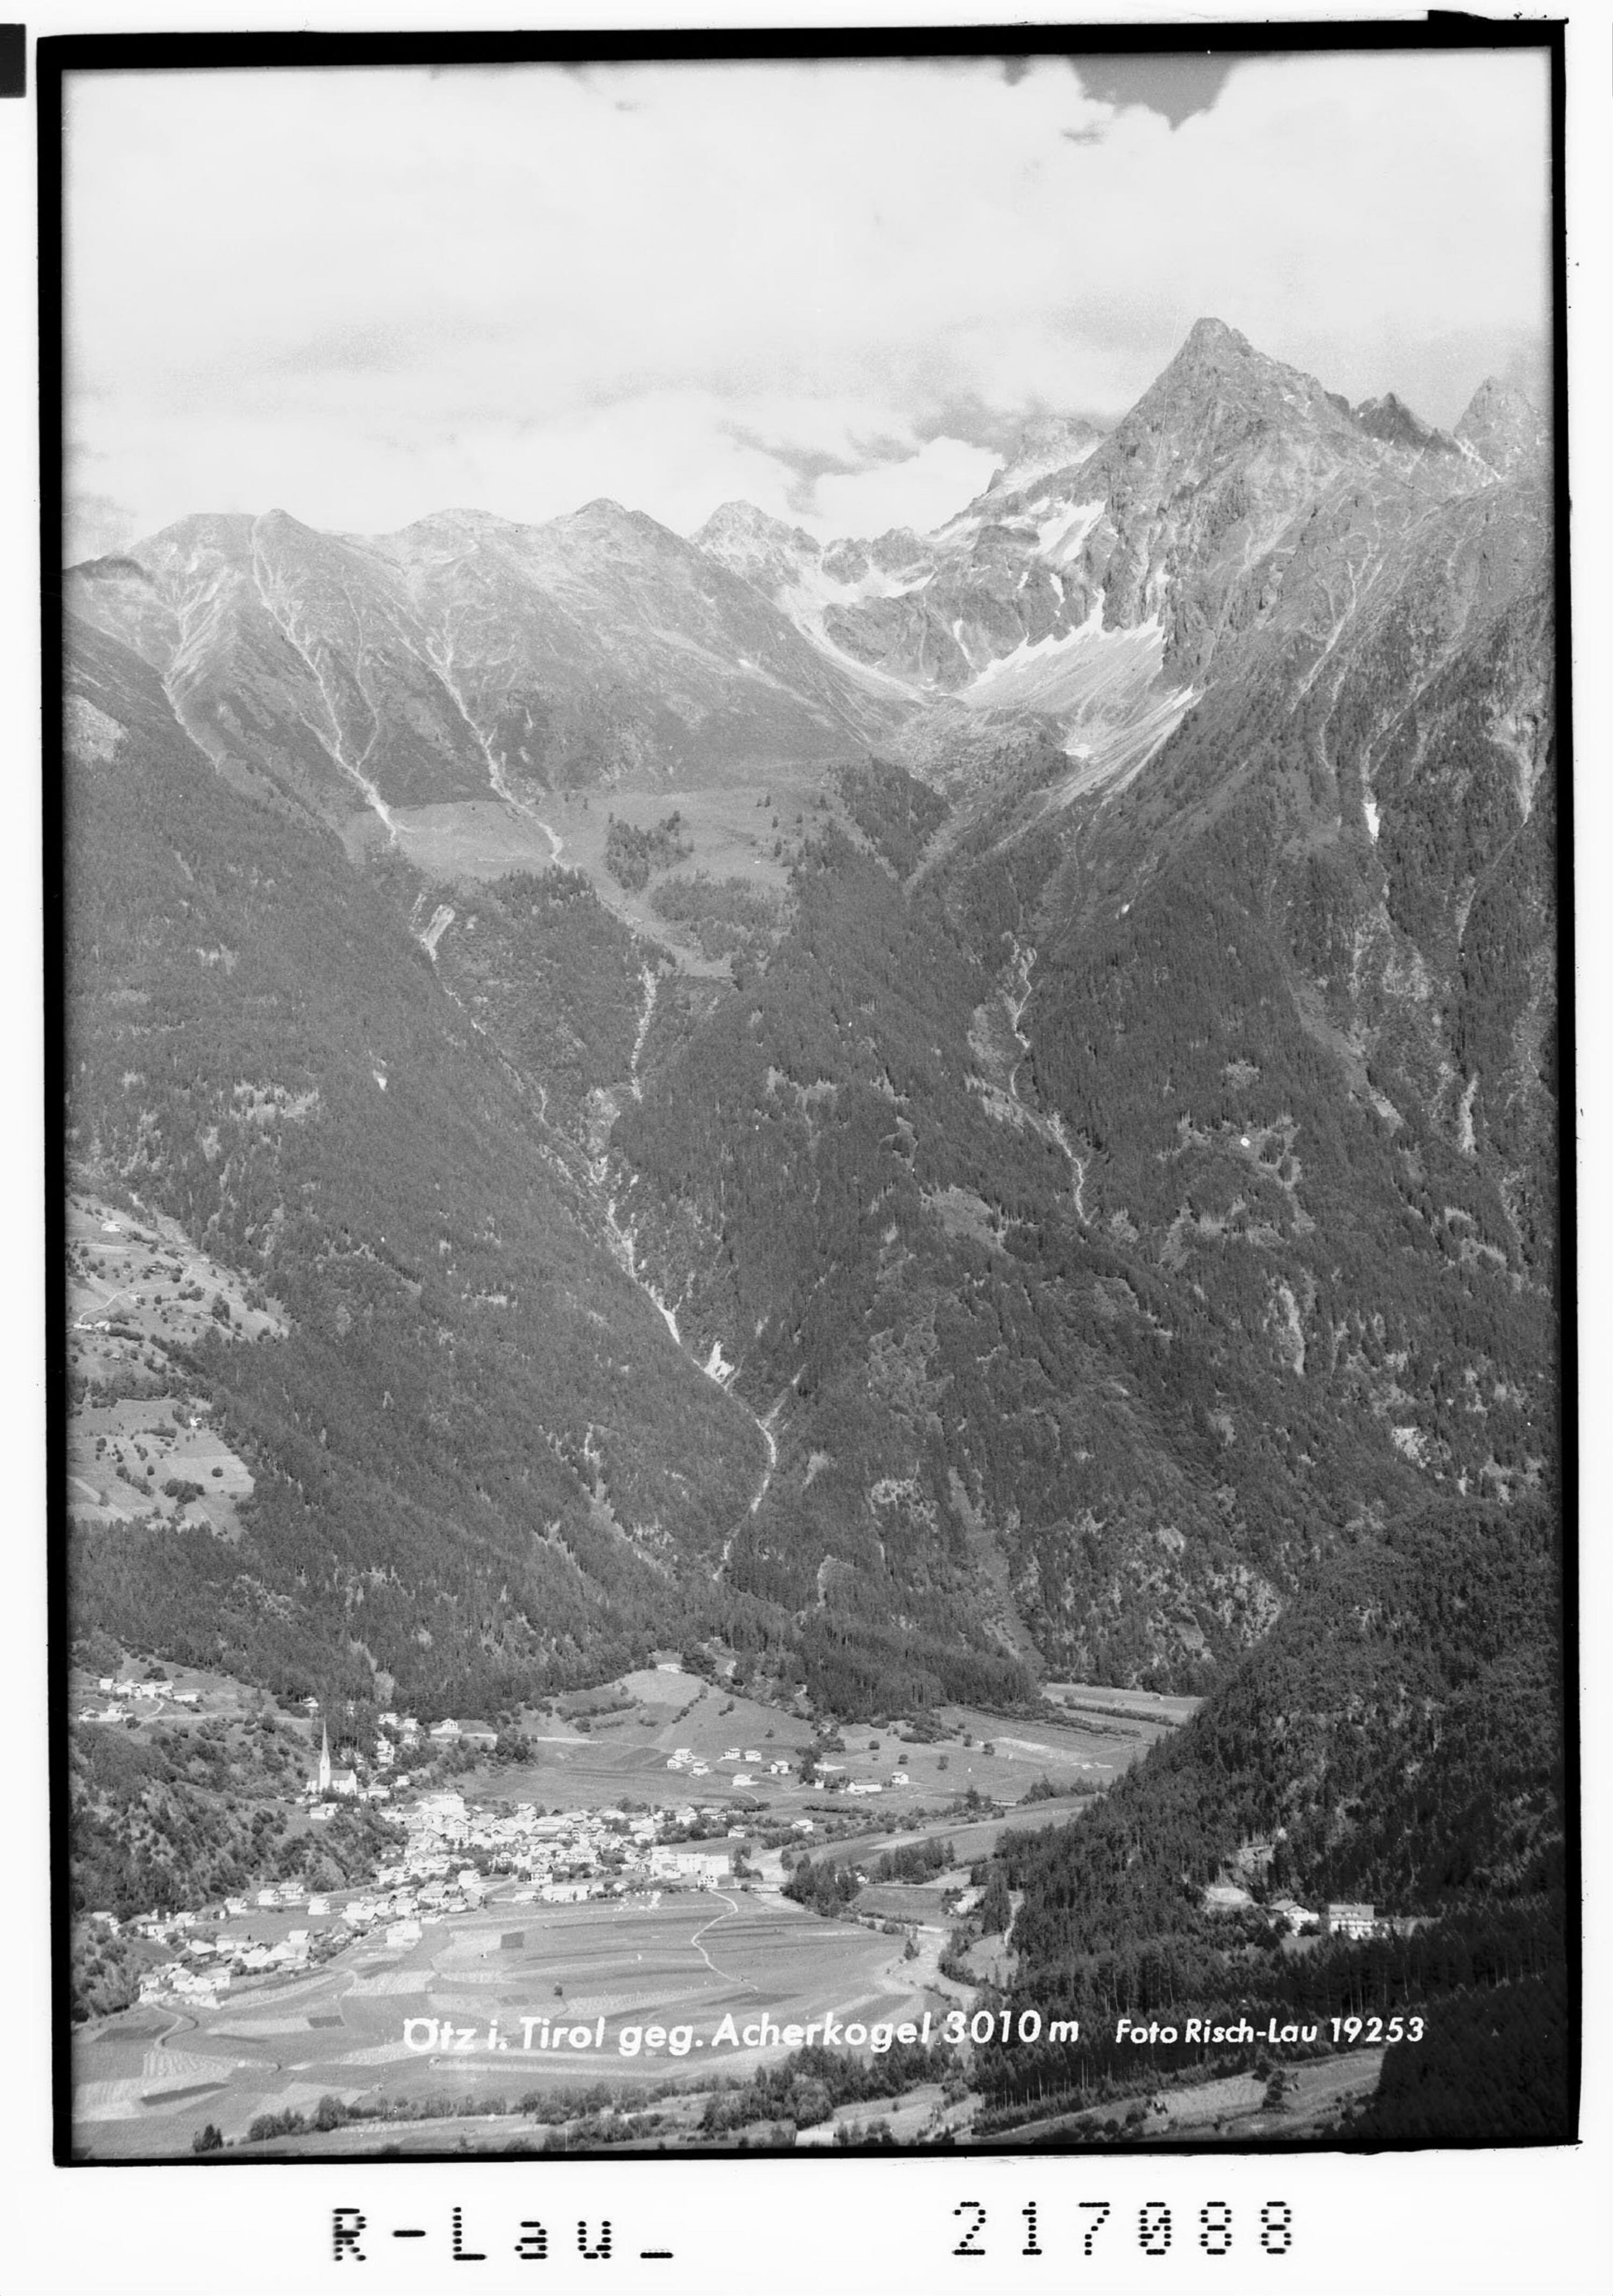 Ötz in Tirol gegen Acherkogel 3010 m></div>


    <hr>
    <div class=